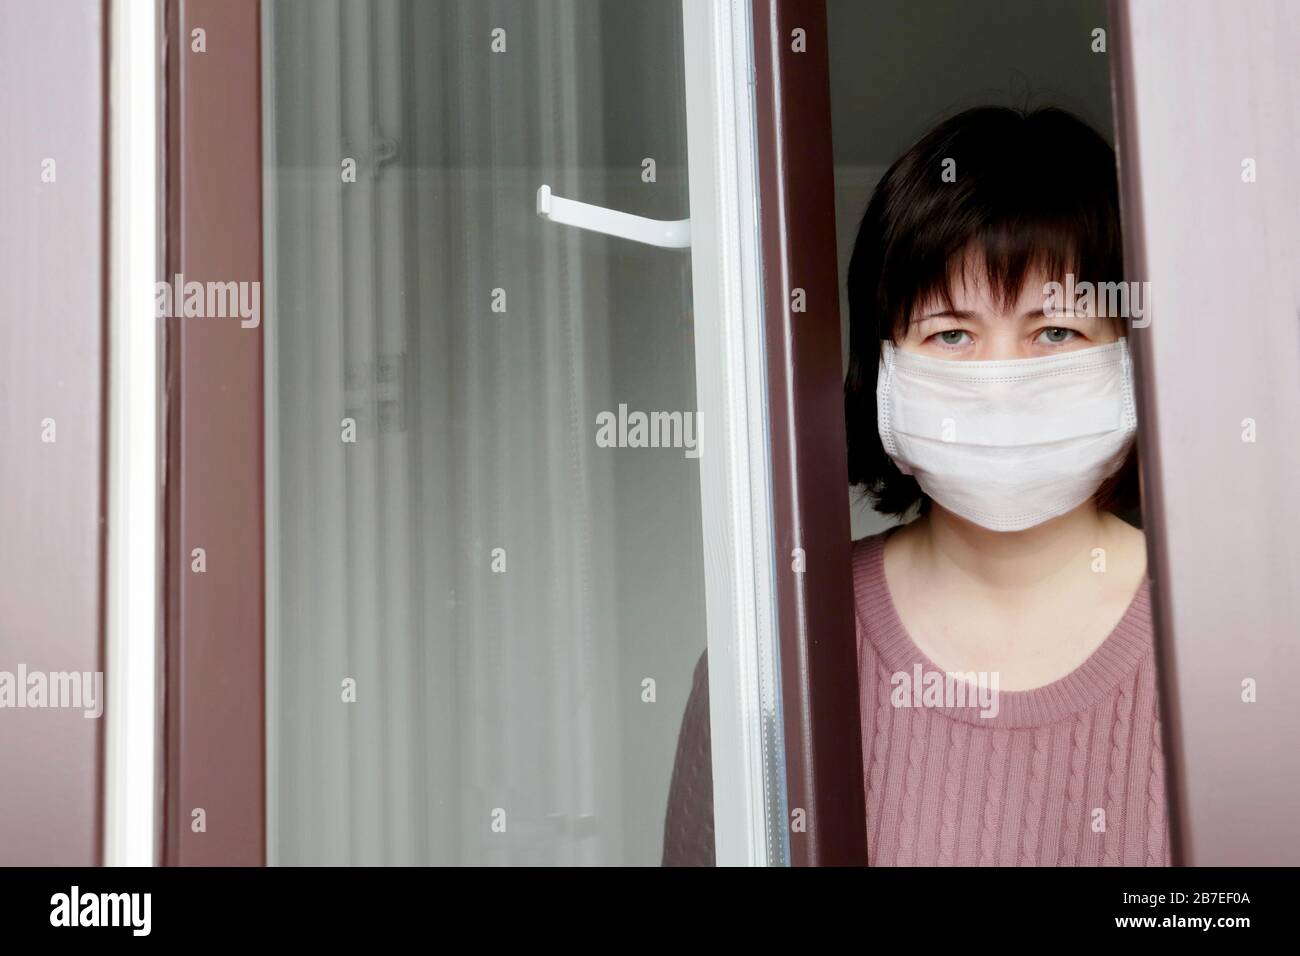 Cuarentena durante la epidemia de coronavirus COVID-19. Mujer triste en una máscara médica en la ventana Foto de stock